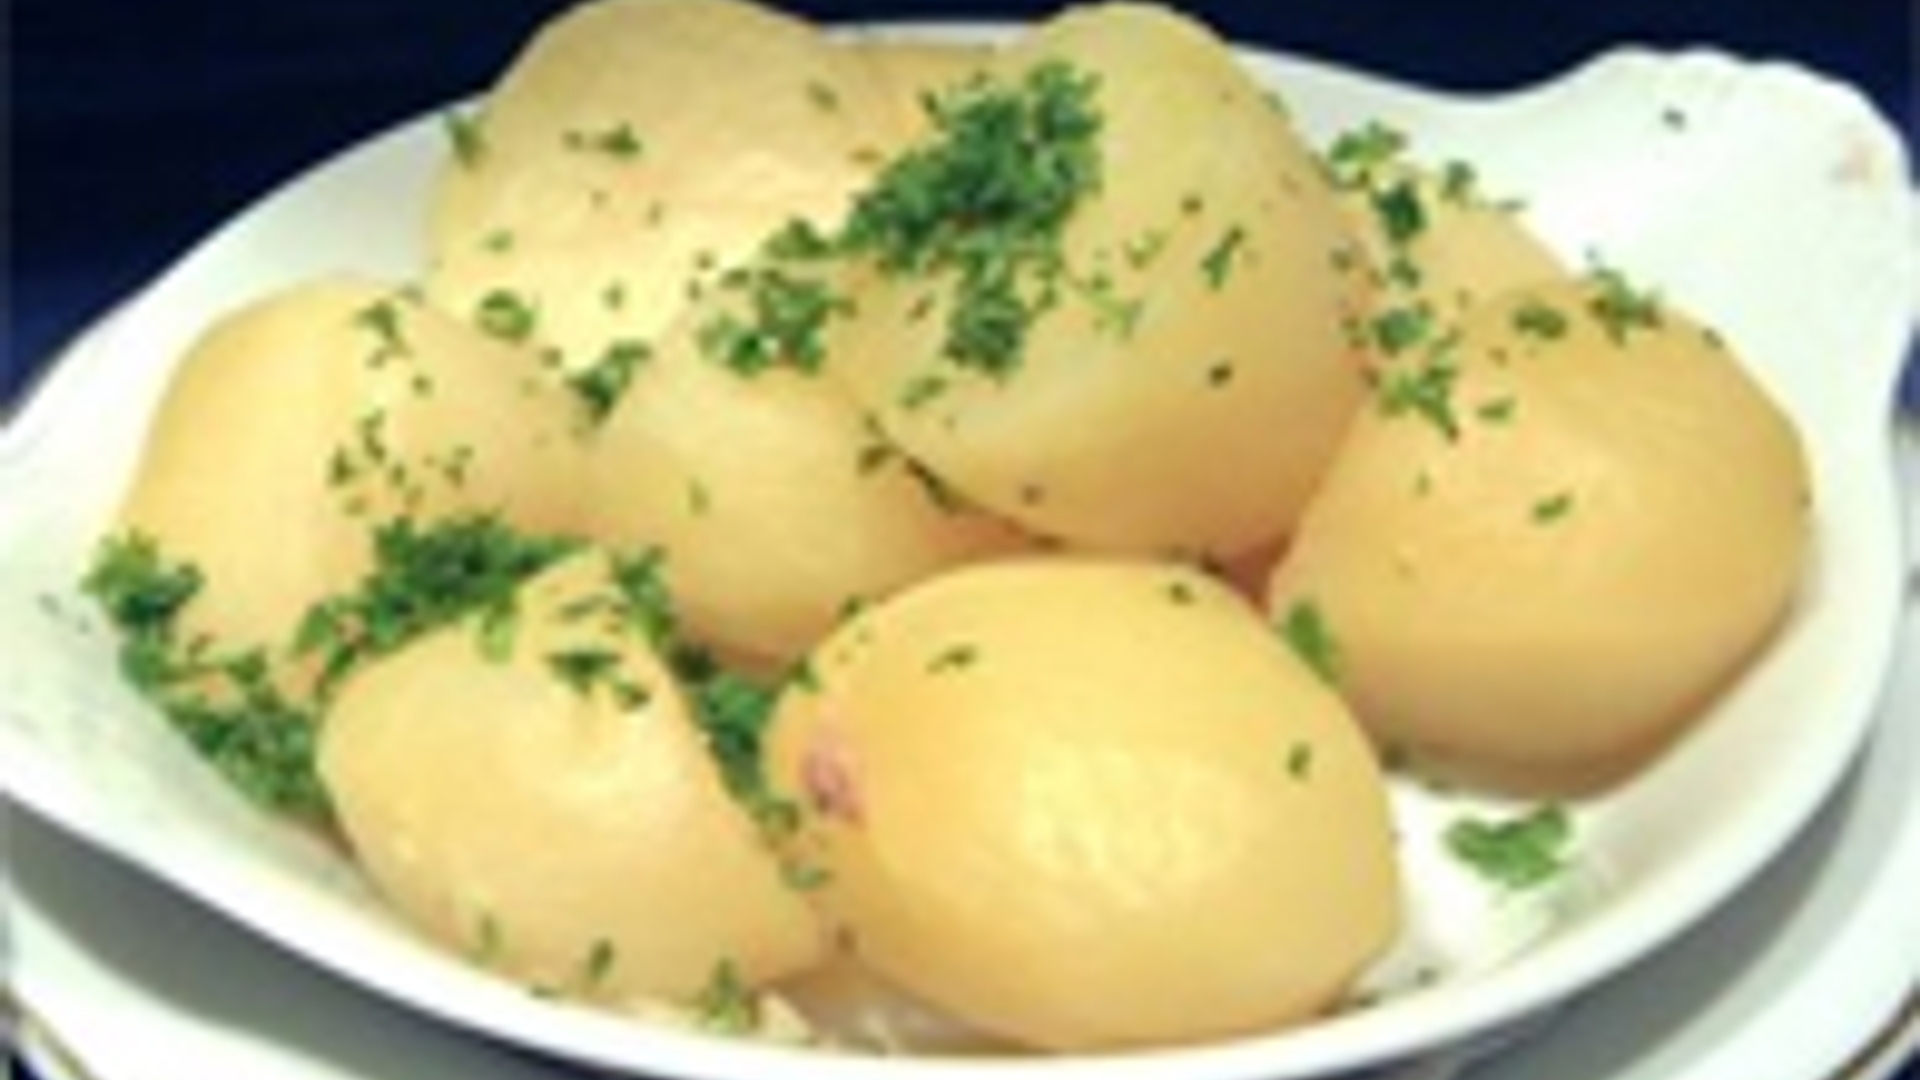 aardappelen_03.jpg